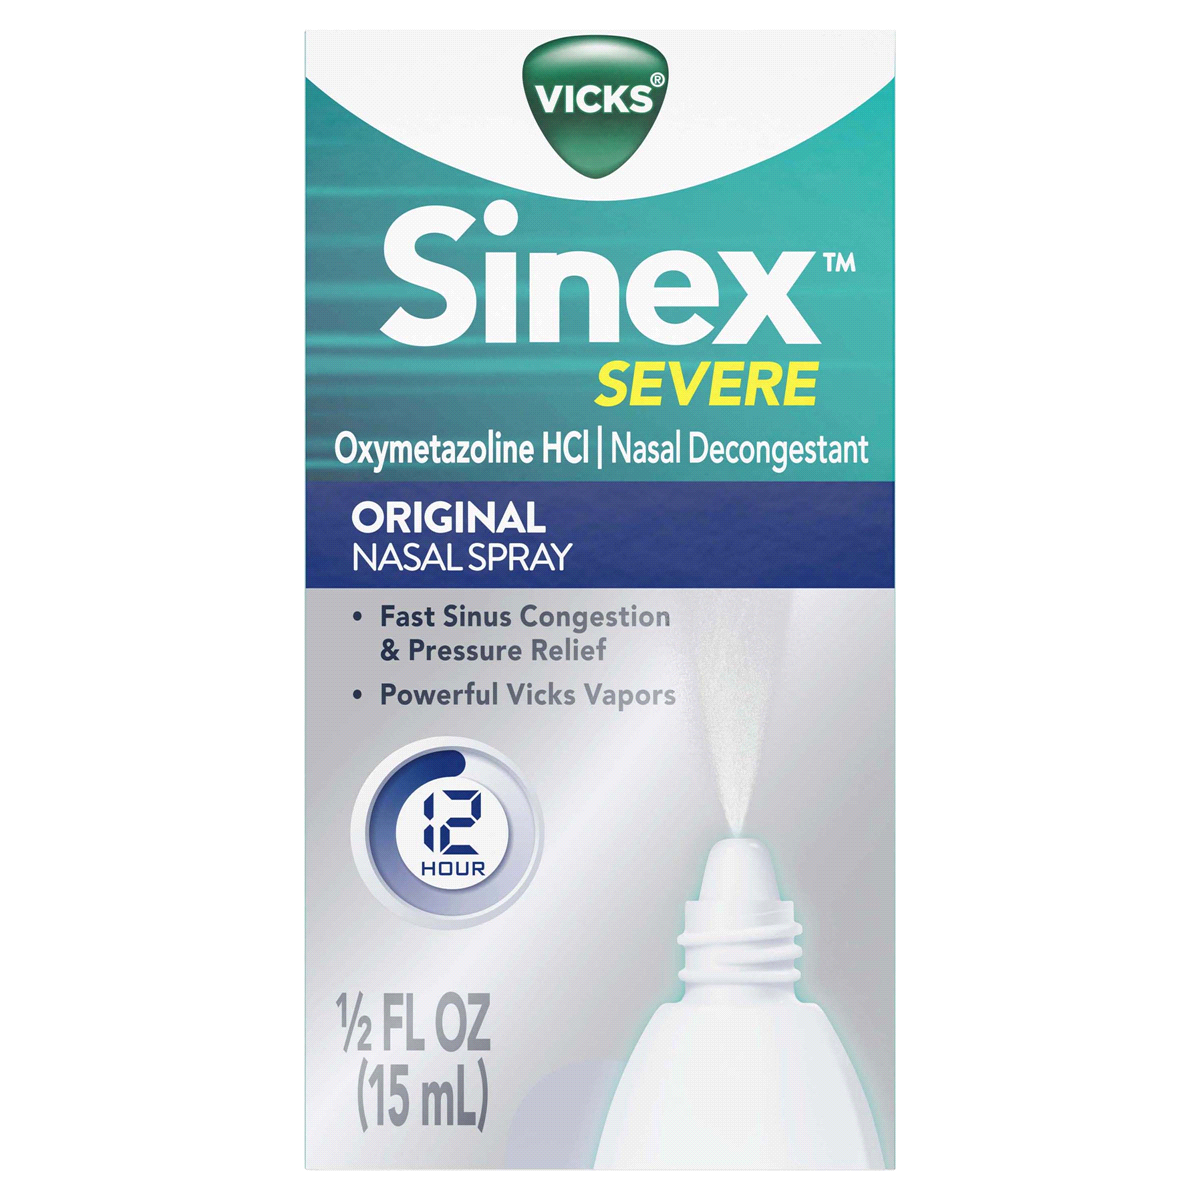 slide 1 of 3, Vicks Sinex Severe Original Nasal Spray Decongestant For Fast Relief, 0.5 fl oz